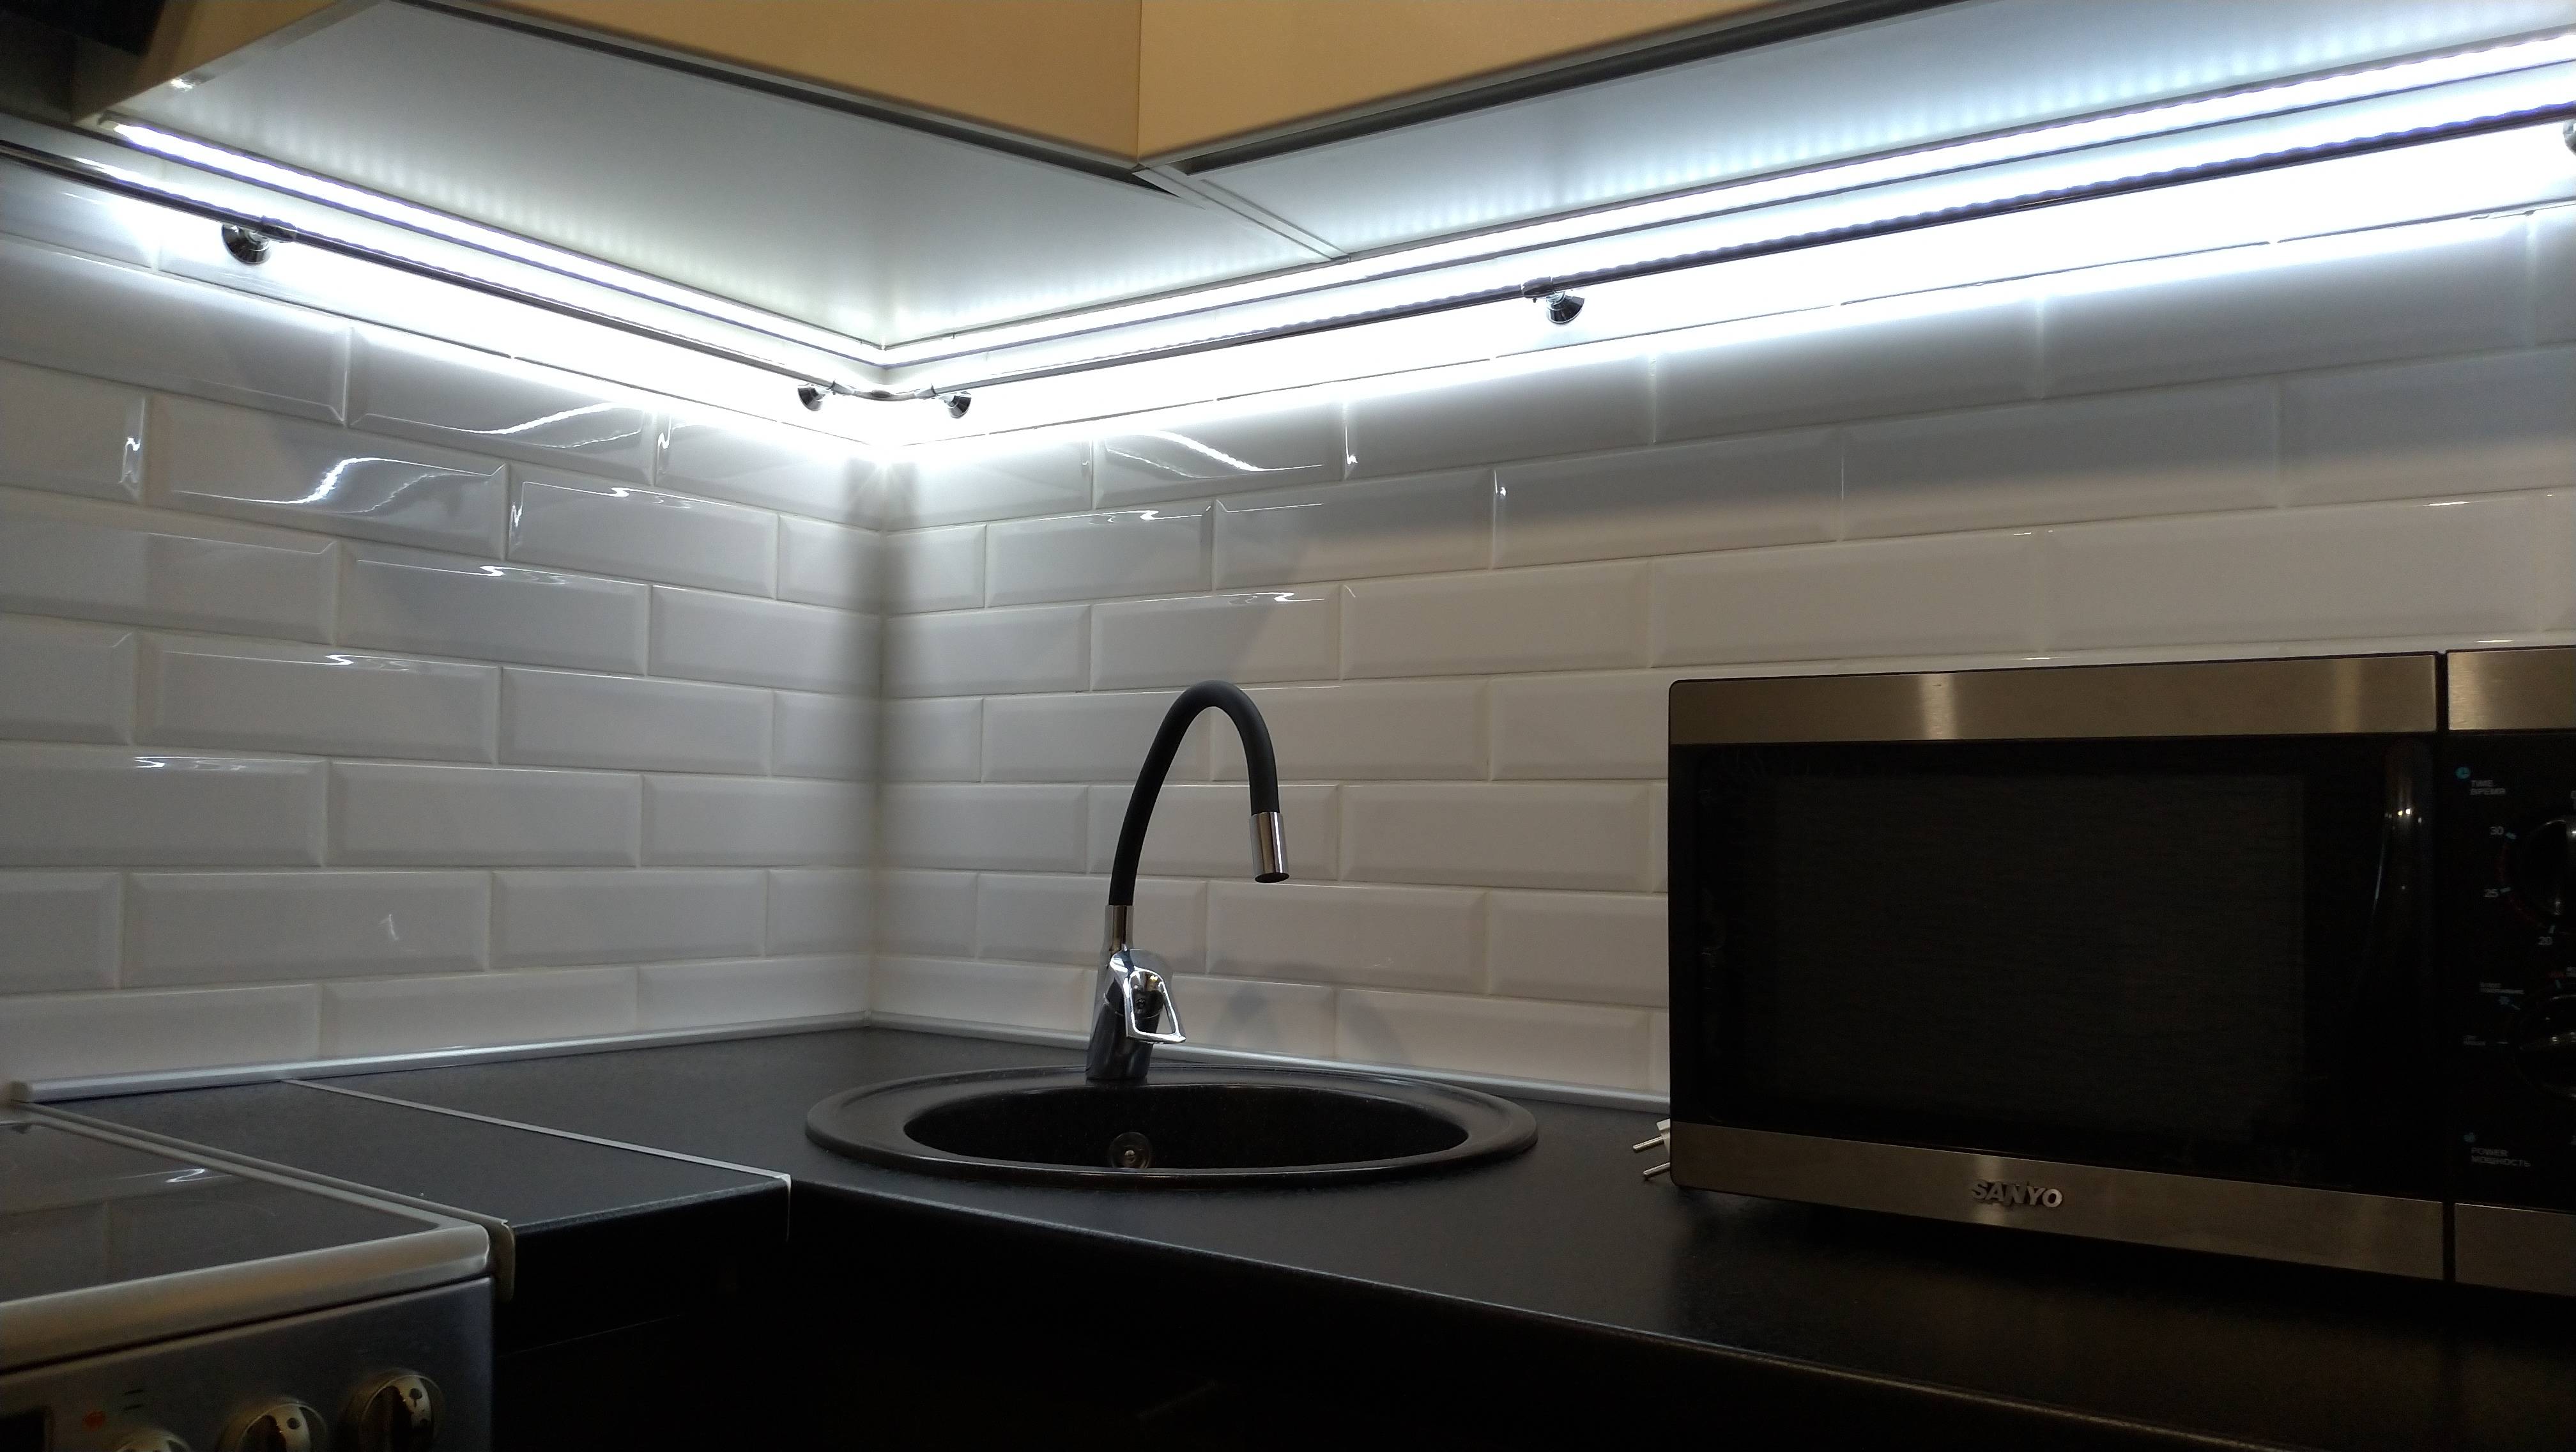 Cветодиодная подсветка под шкафы для кухни: секреты монтажа